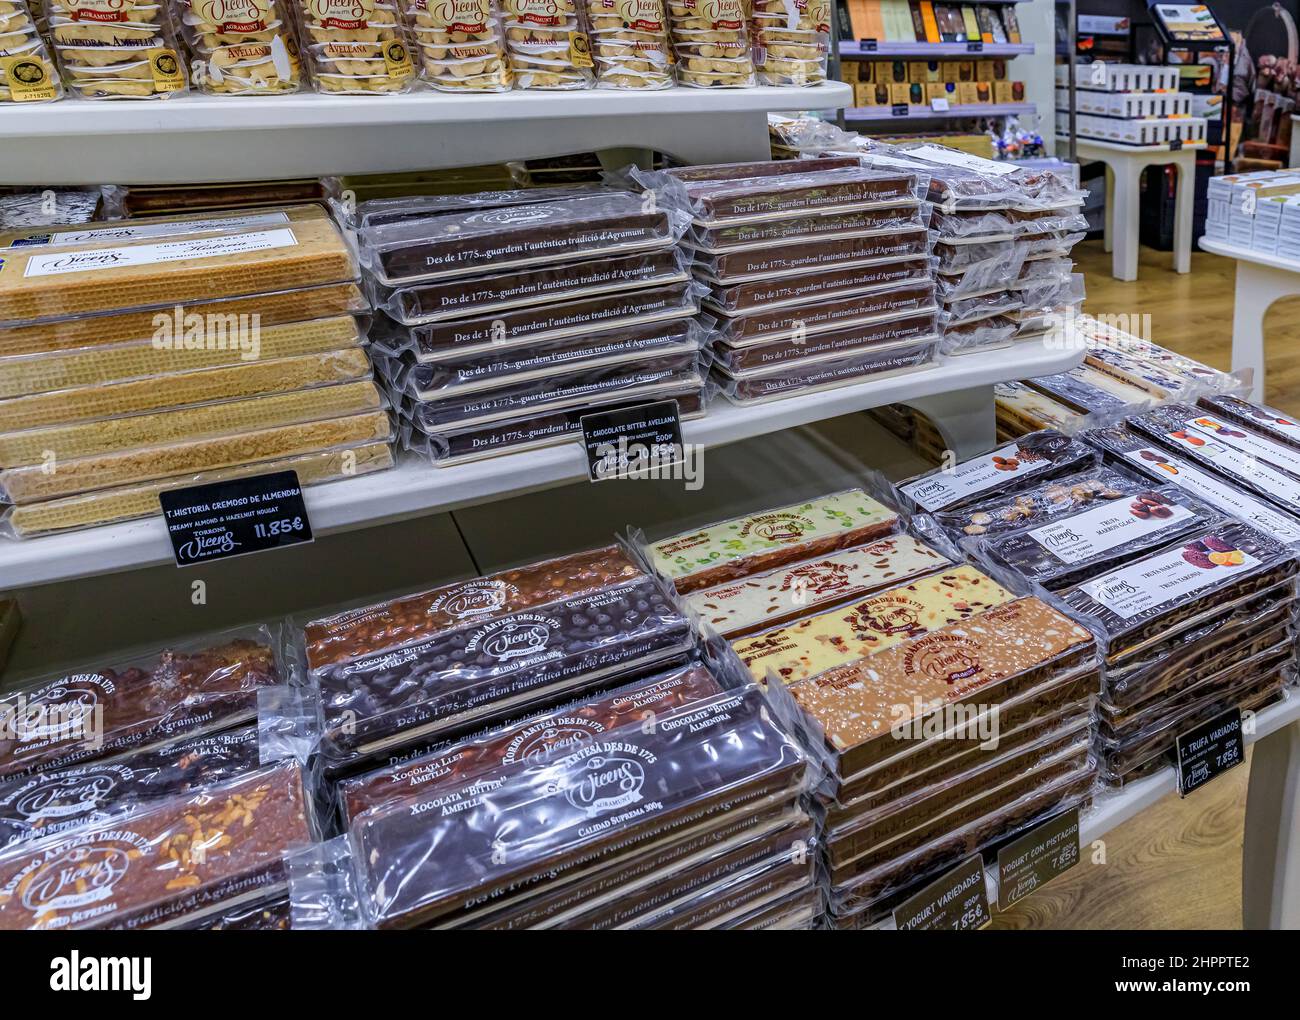 Madrid, Espagne - 28 juin 2021 : barres de chocolat exposées au magasin Torrons Vicens, société artisanale de chocolat depuis 1775 avec des boutiques dans le monde entier Banque D'Images